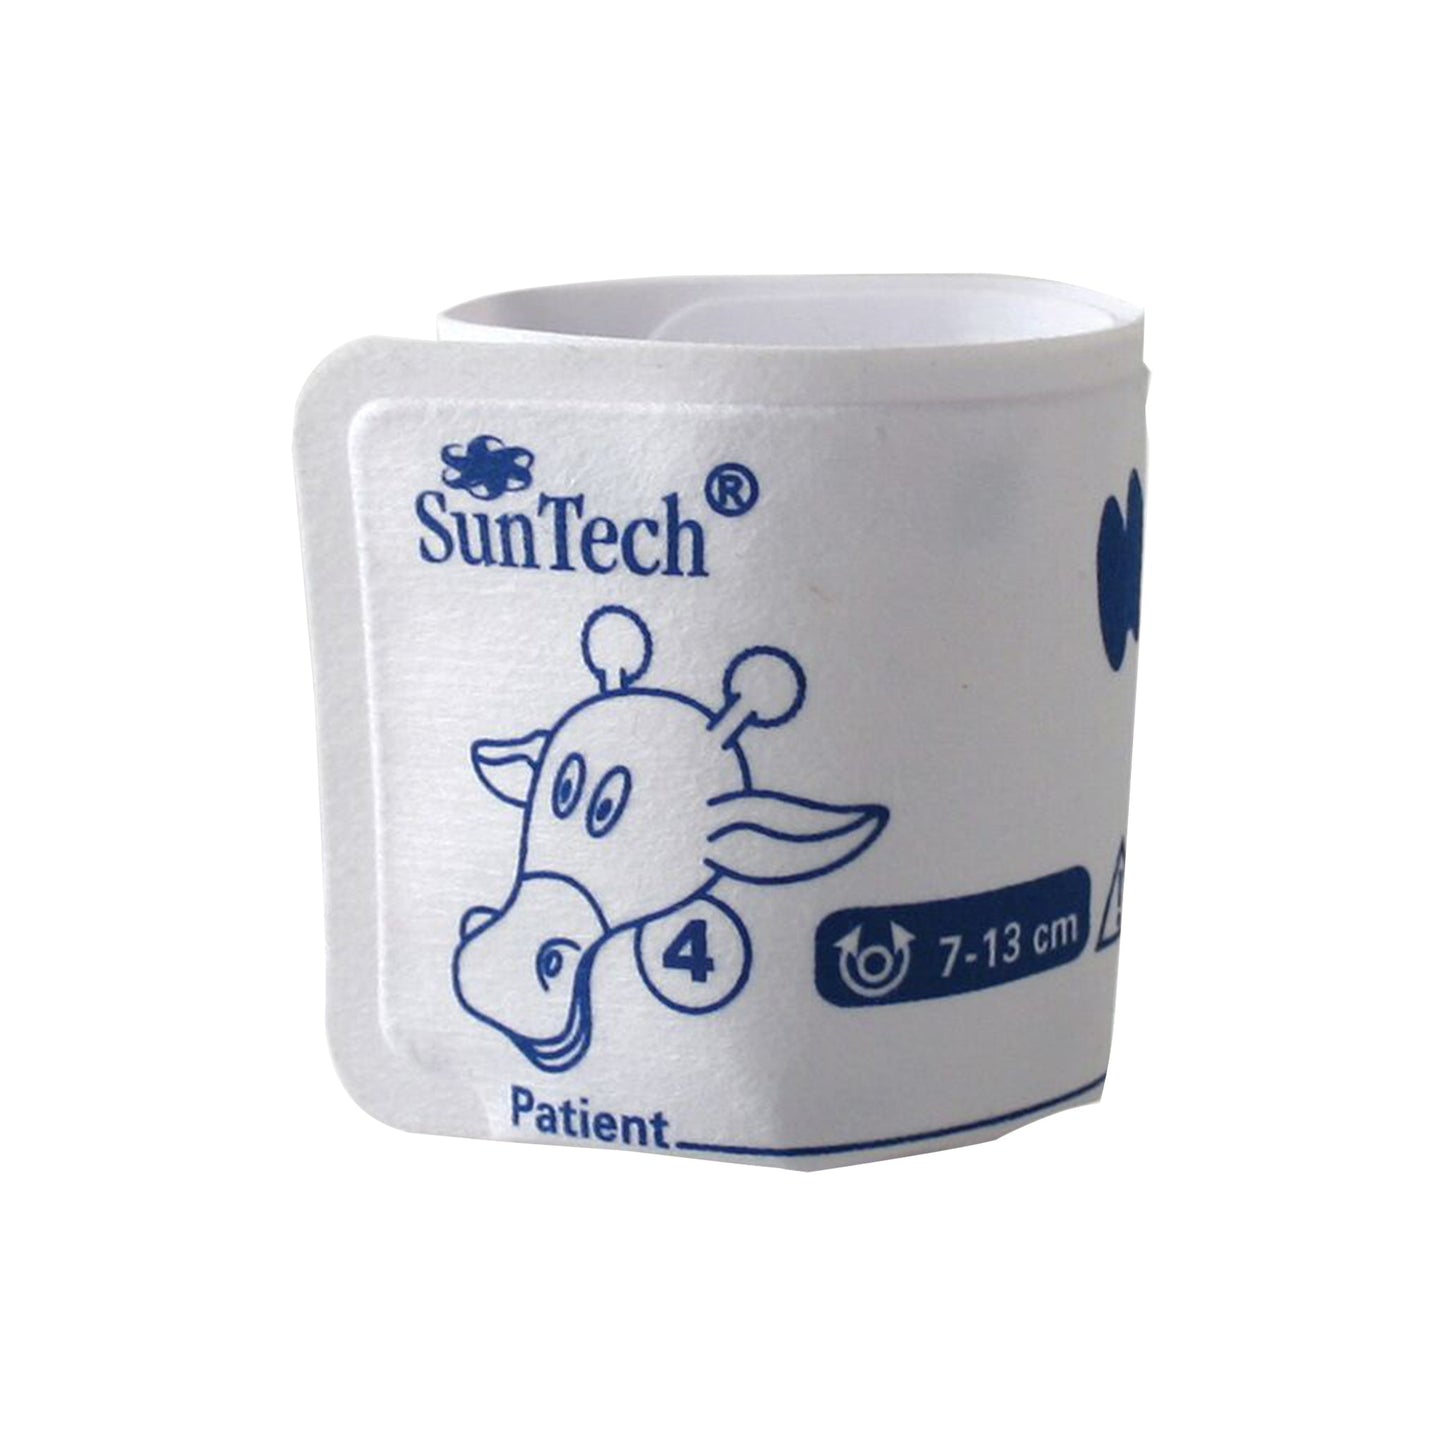 SunTech BP Vet Cuff Size 4, 7–13cm